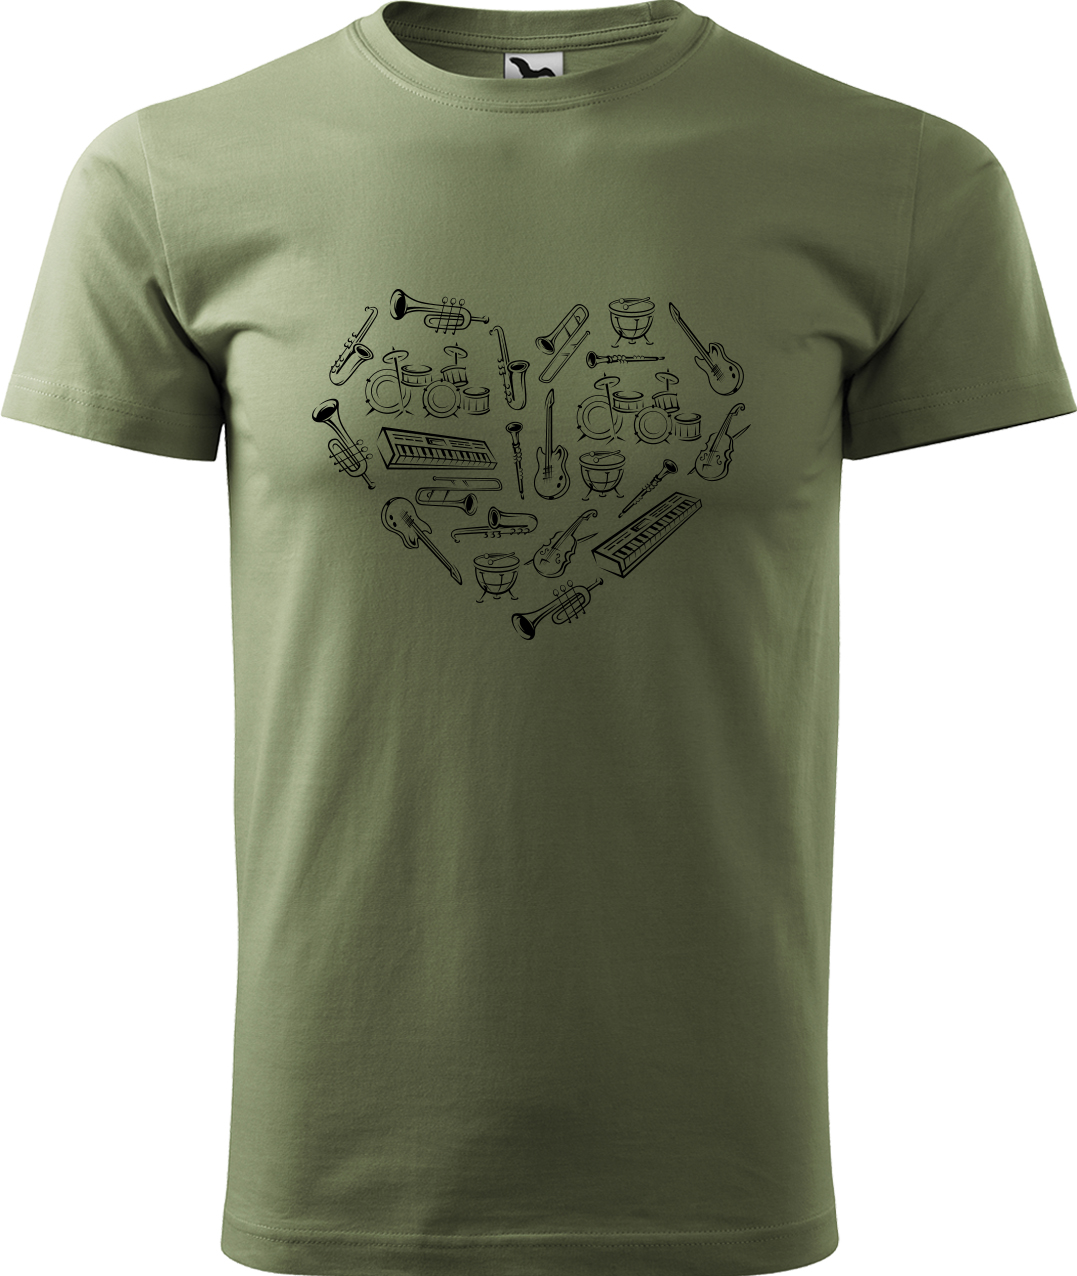 Pánské tričko s kytarou - Srdce z nástrojů Velikost: 4XL, Barva: Světlá khaki (28), Střih: pánský